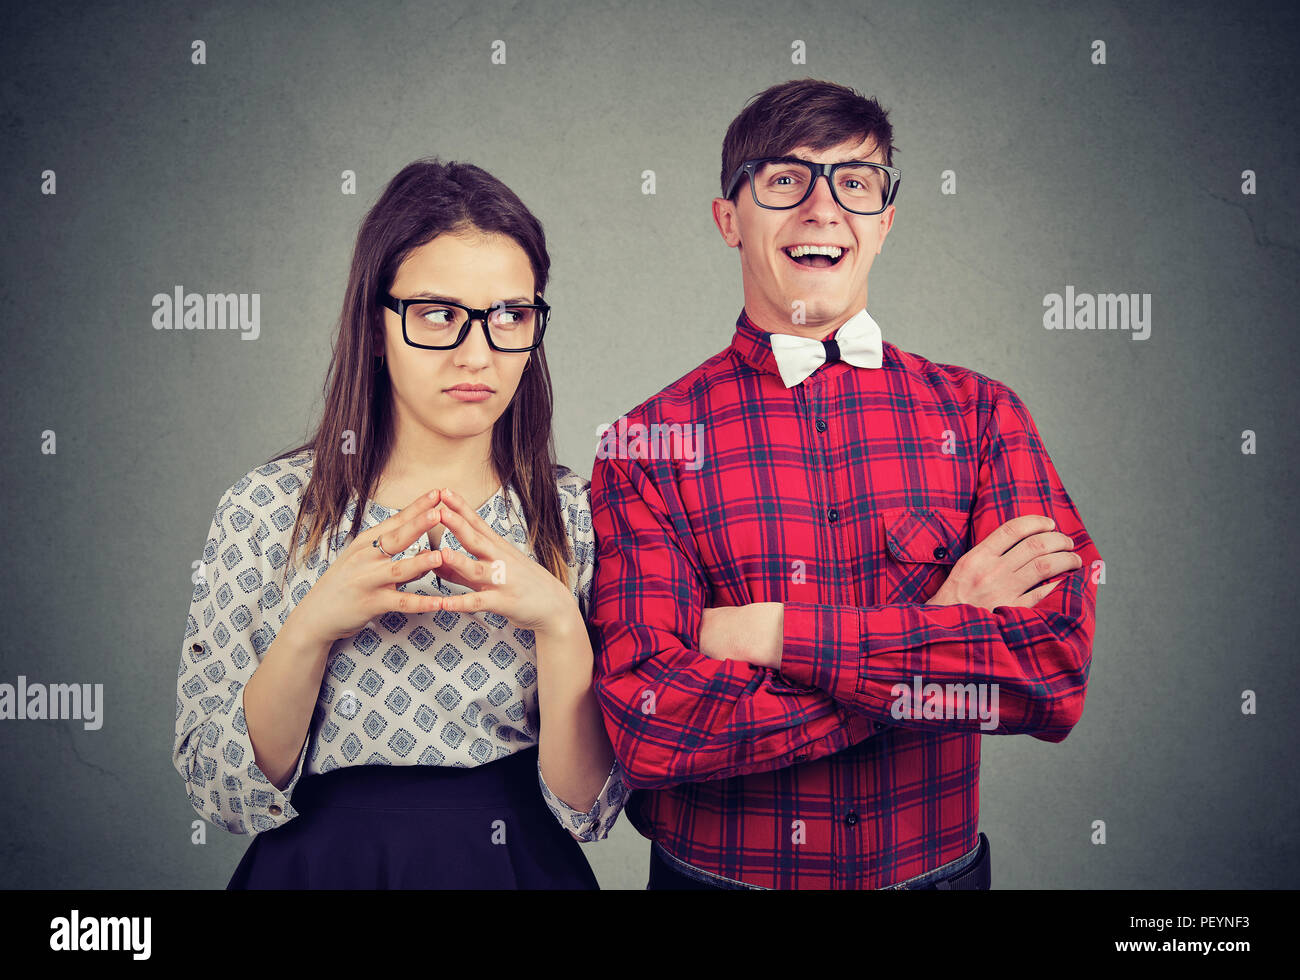 Jeune couple de personnages différents avec gai homme heureux et grincheuse femme négatif sur fond gris Banque D'Images